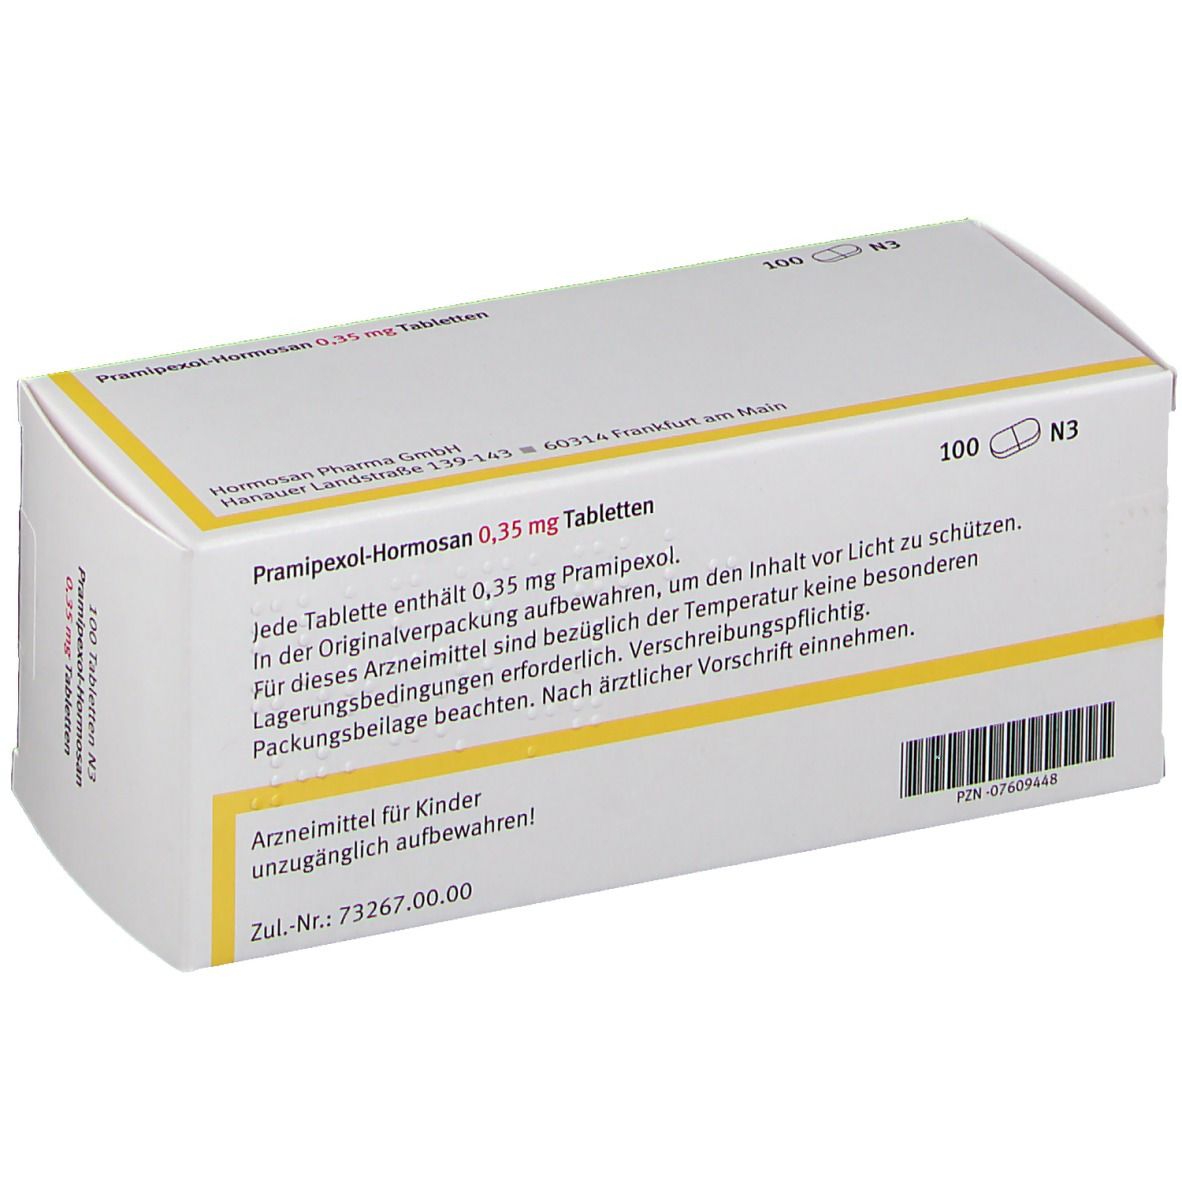 Pramipexol-Hormosan 0,35 mg